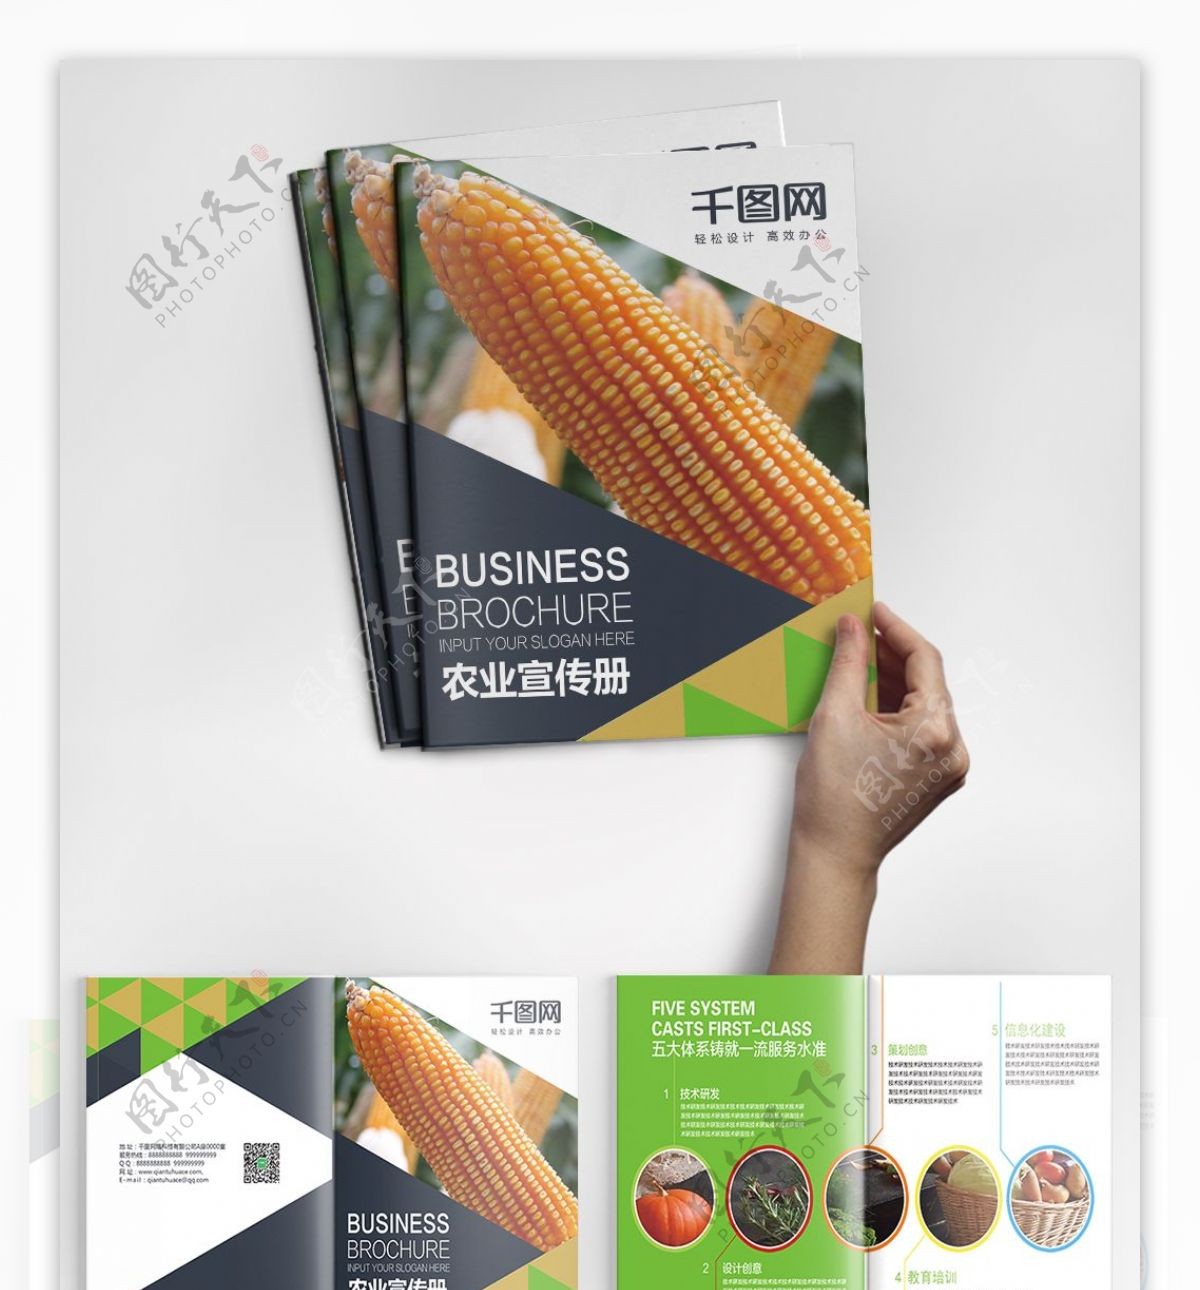 时尚版式农业产品画册PSD模板